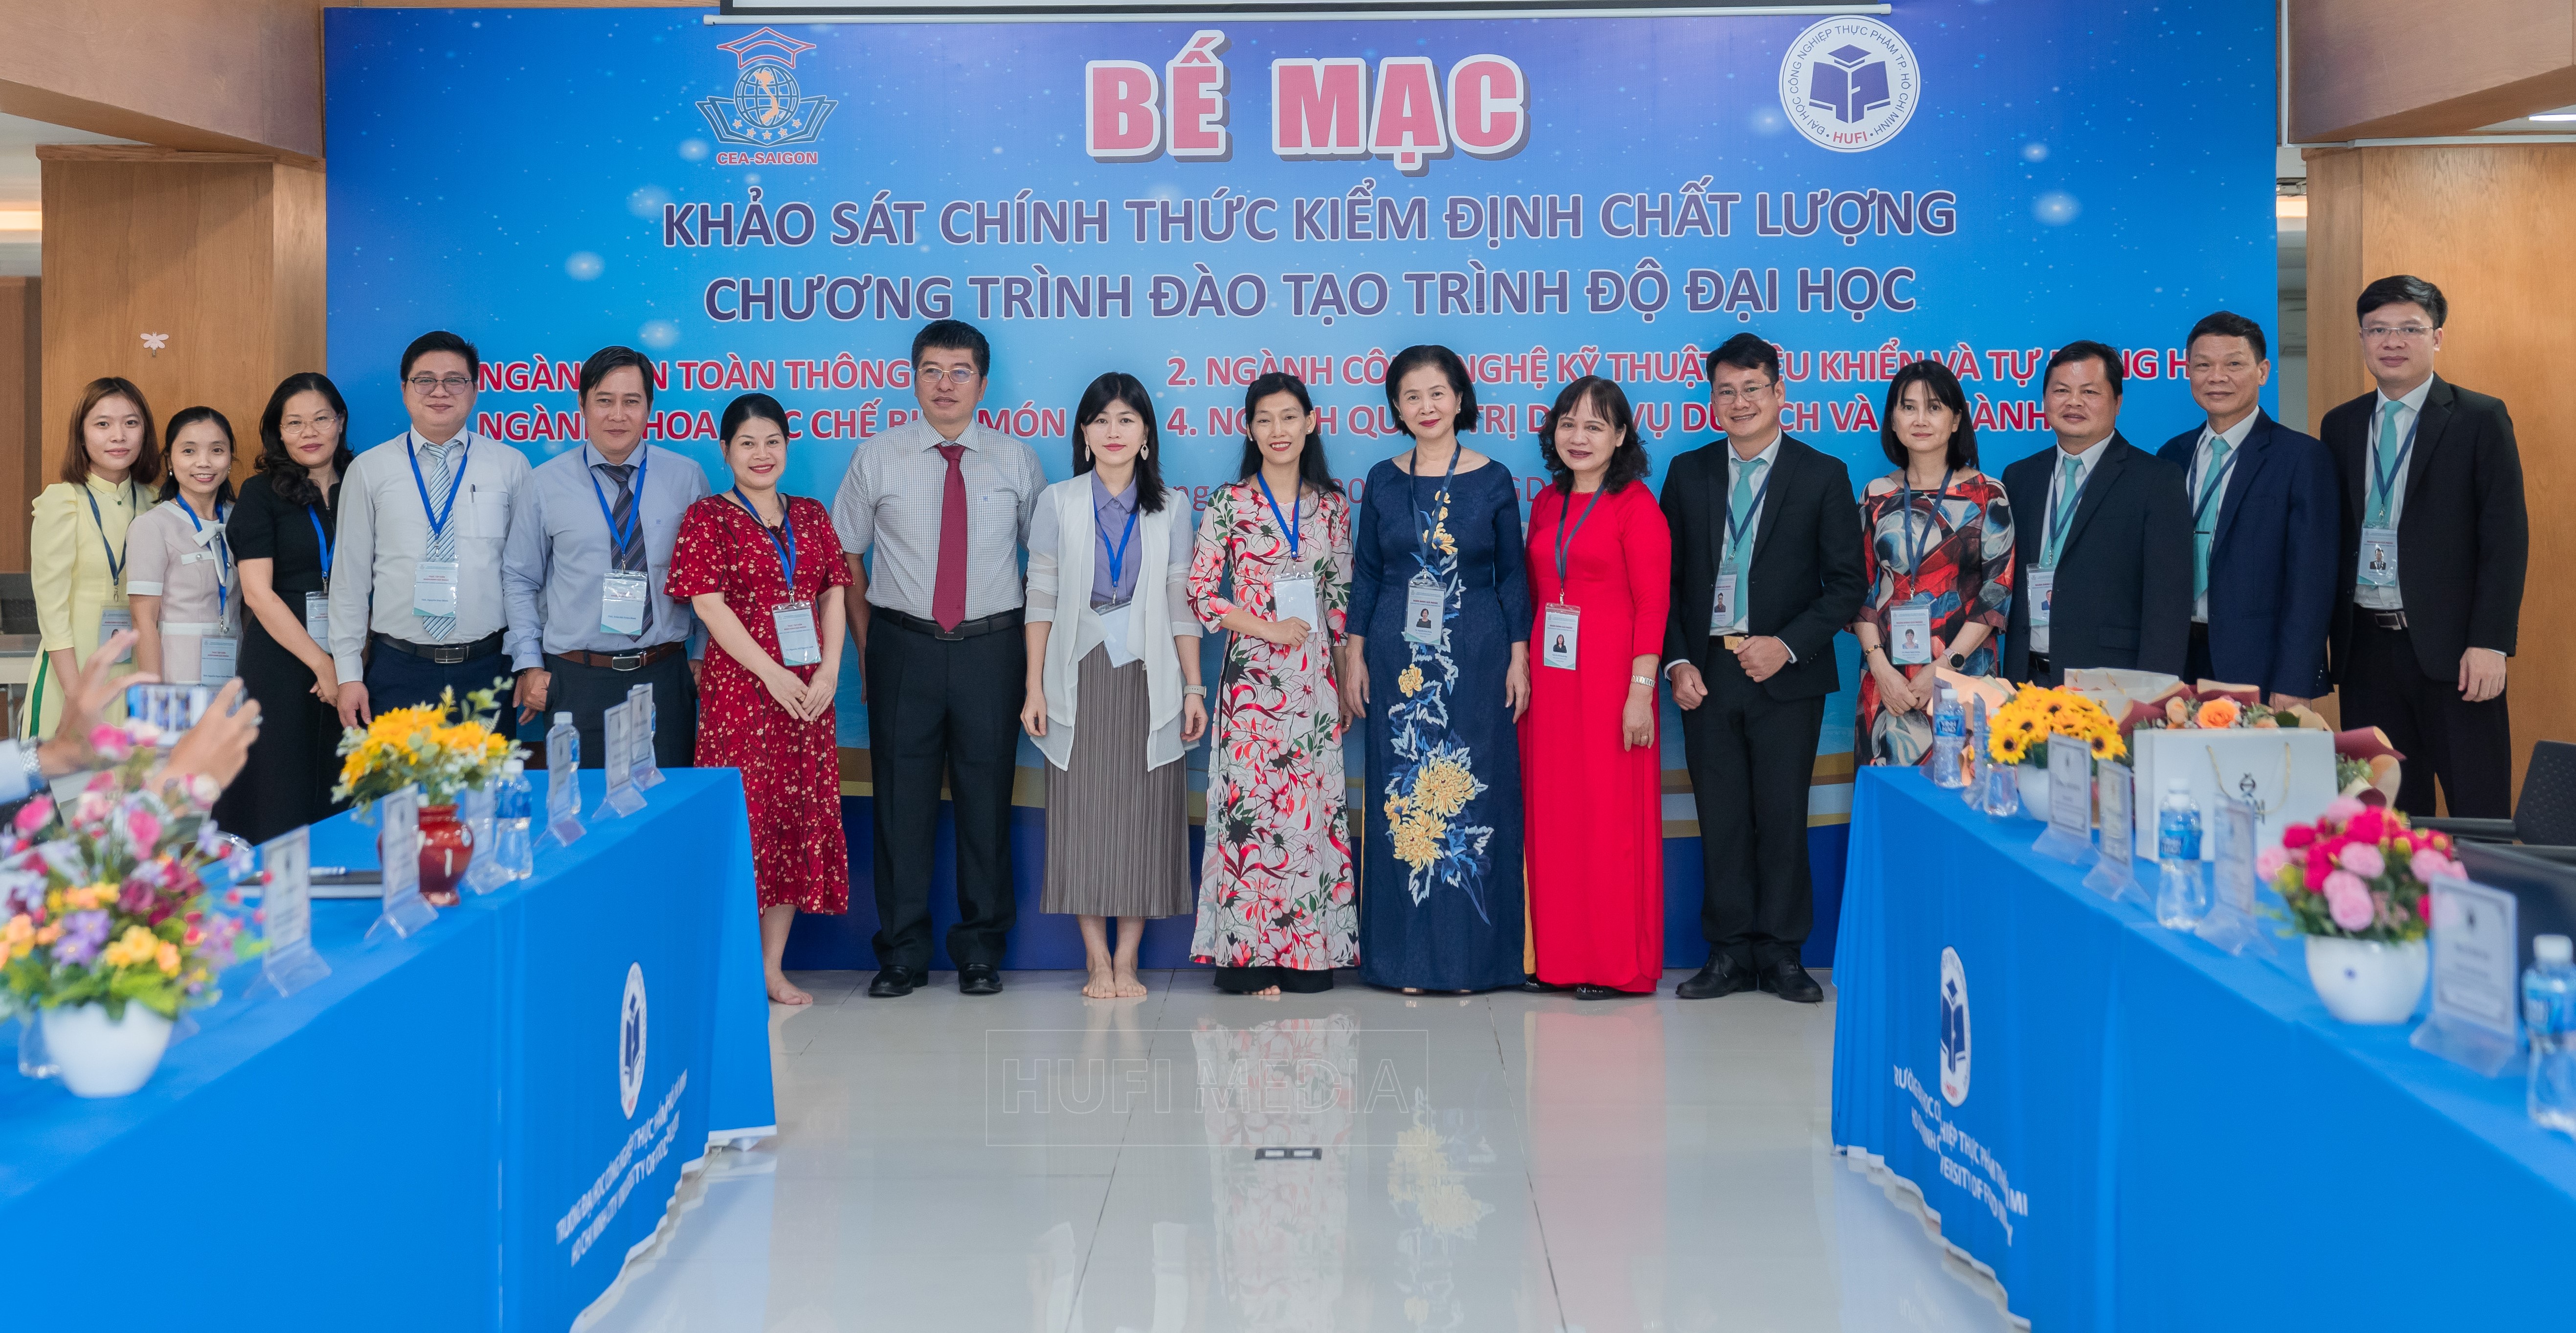 Bế mạc Khảo sát chính thức 04 chương trình đào tạo của Trường Đại học Công nghiệp Thực phẩm Thành phố Hồ Chí Minh